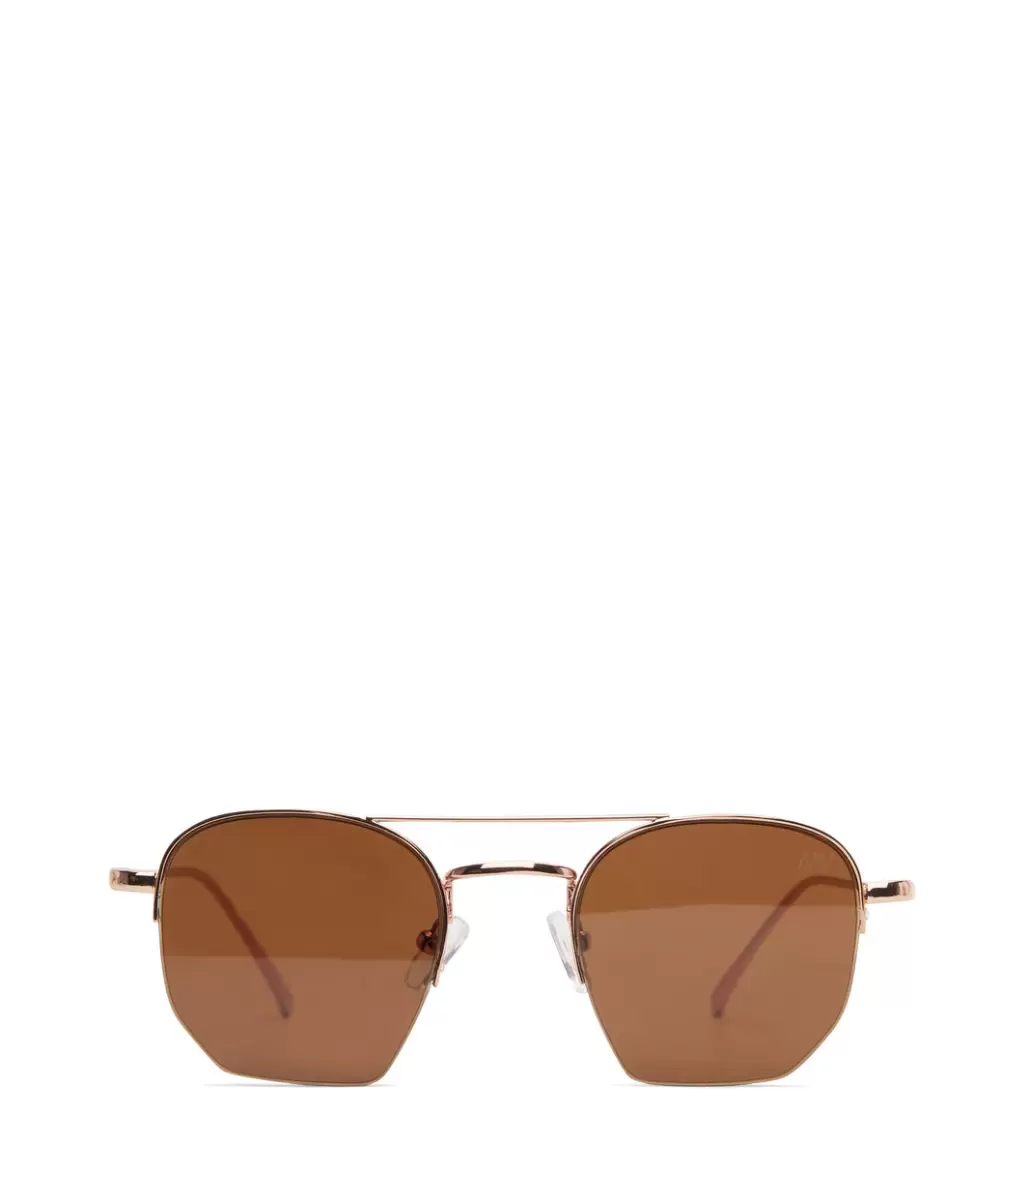 Rgobro Exclusive Offer Sunglasses Women Sarai Aviator Sunglasses Matt & Nat